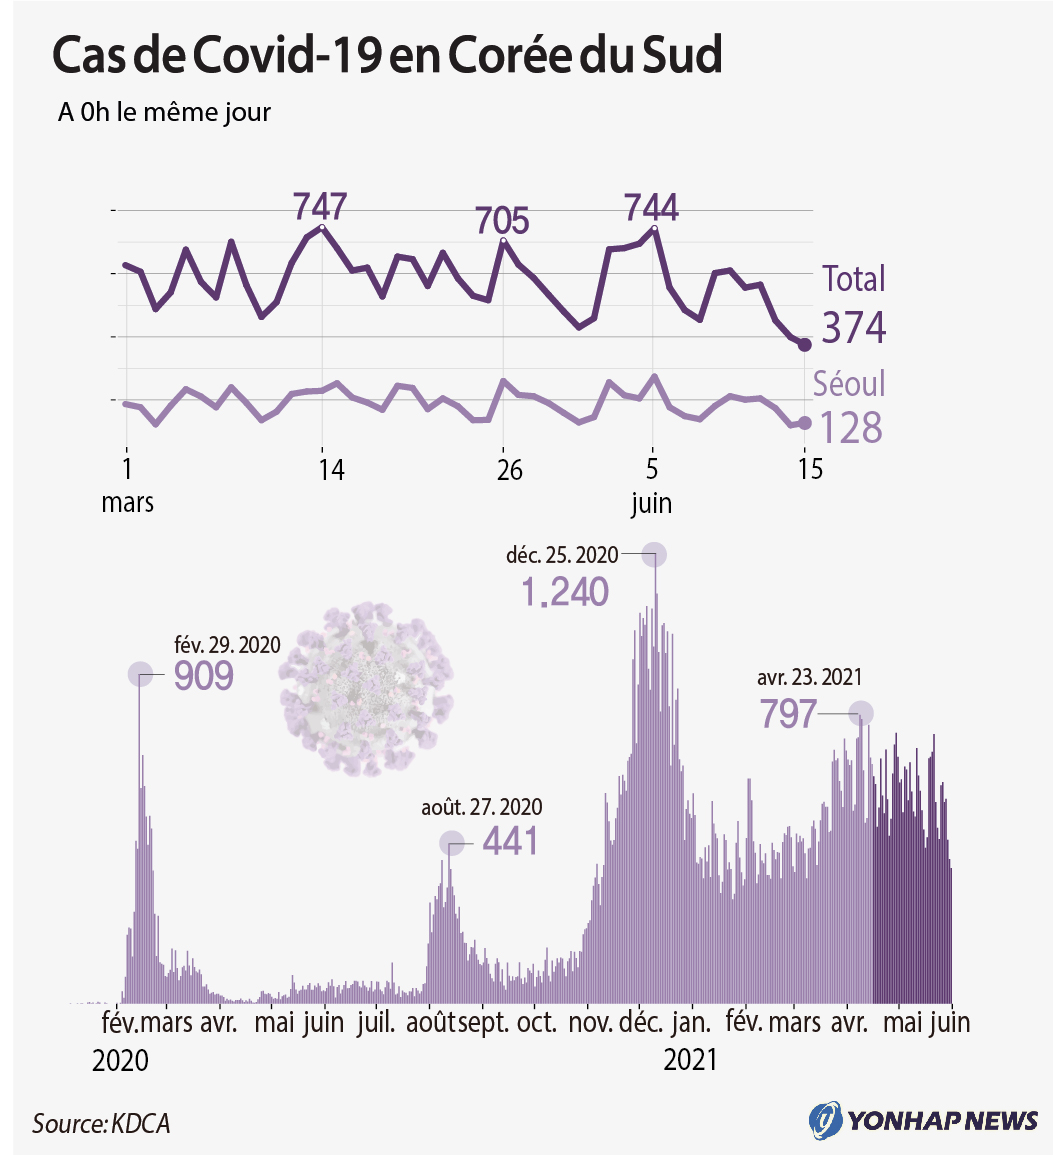 L'Agence coréenne de contrôle et prévention des maladies (KDCA) a rapporté, le mardi 15 juin 2021, 374 nouveaux cas de Covid-19 depuis minuit la veille, portant le total à 148.647. 